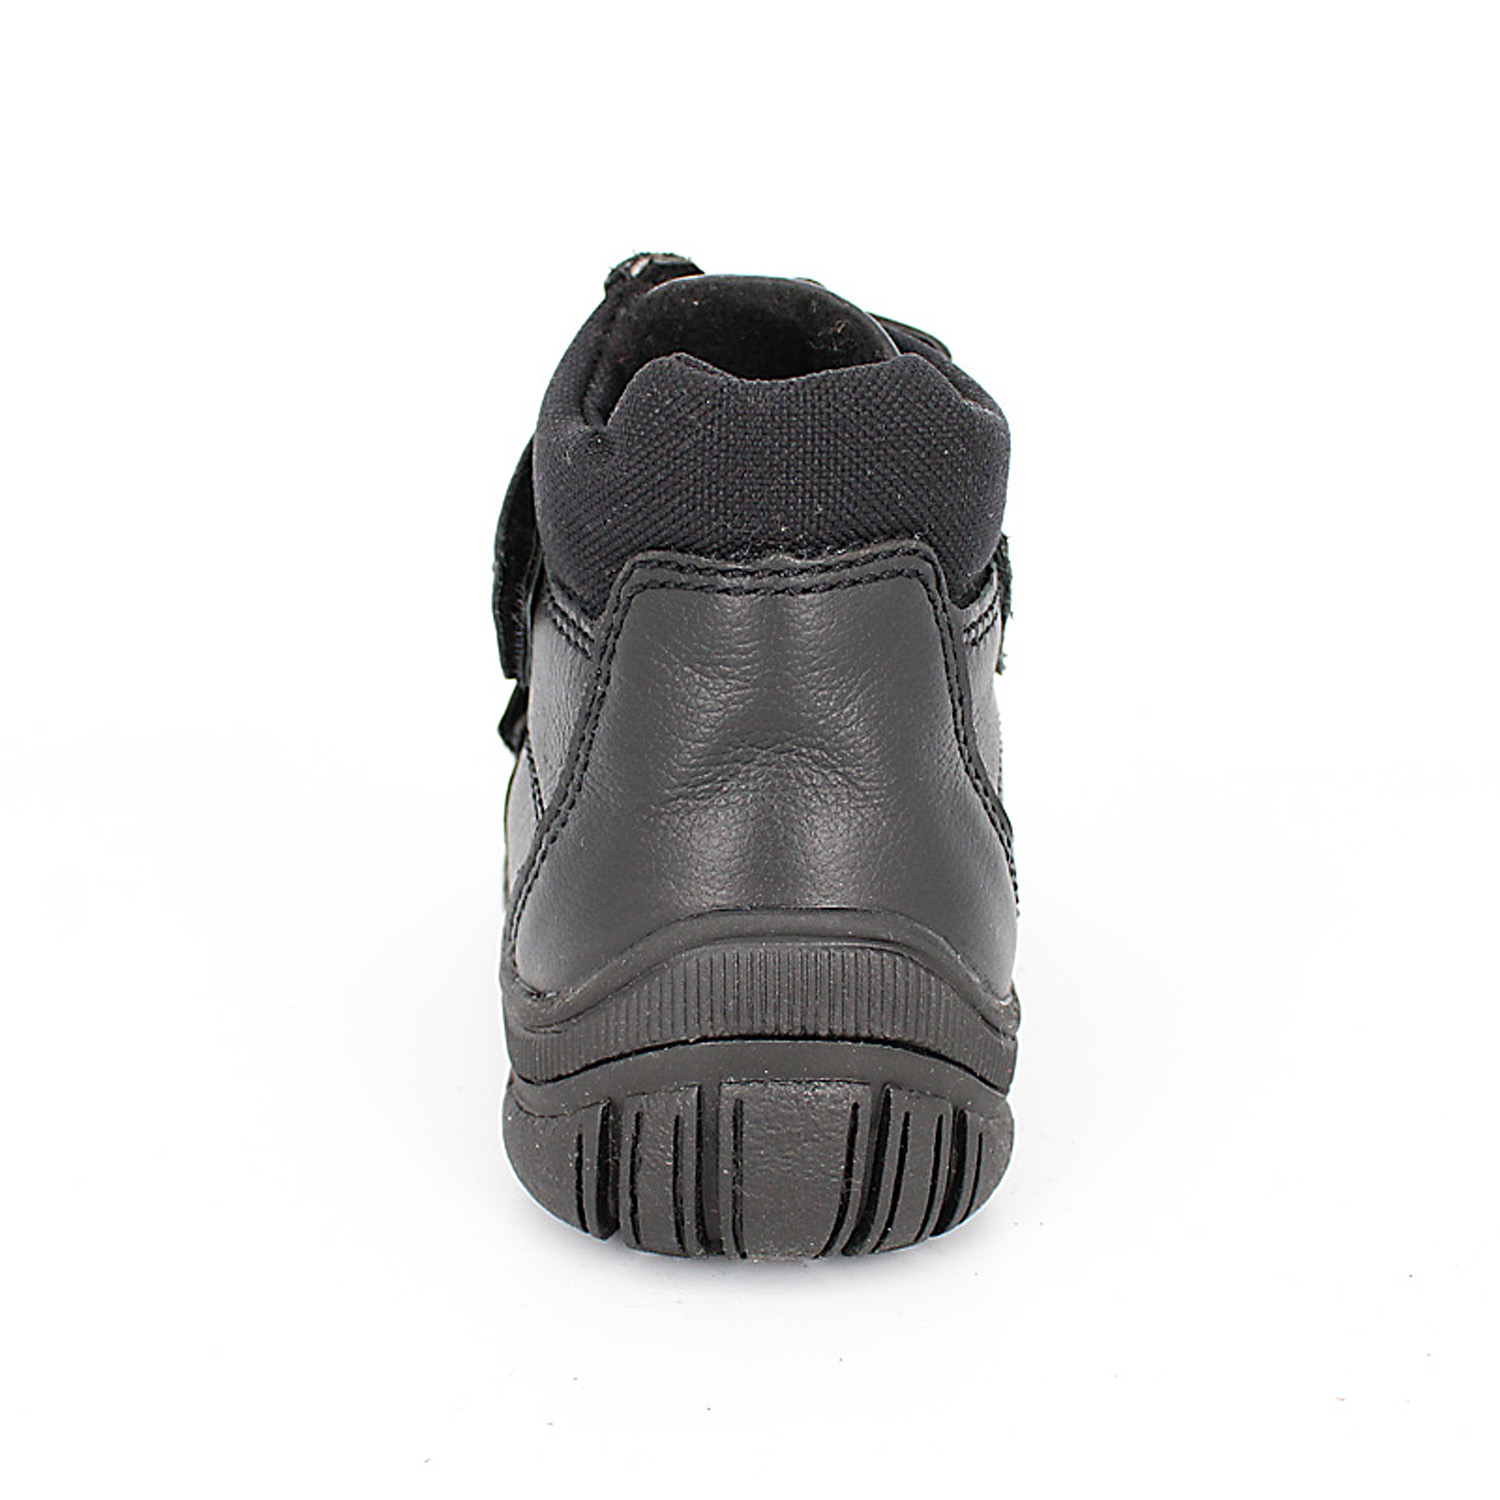 Ботинки ЛЕЛЬ м 3-124 Ботинки дошкольные байка (хром черный) - фото 4